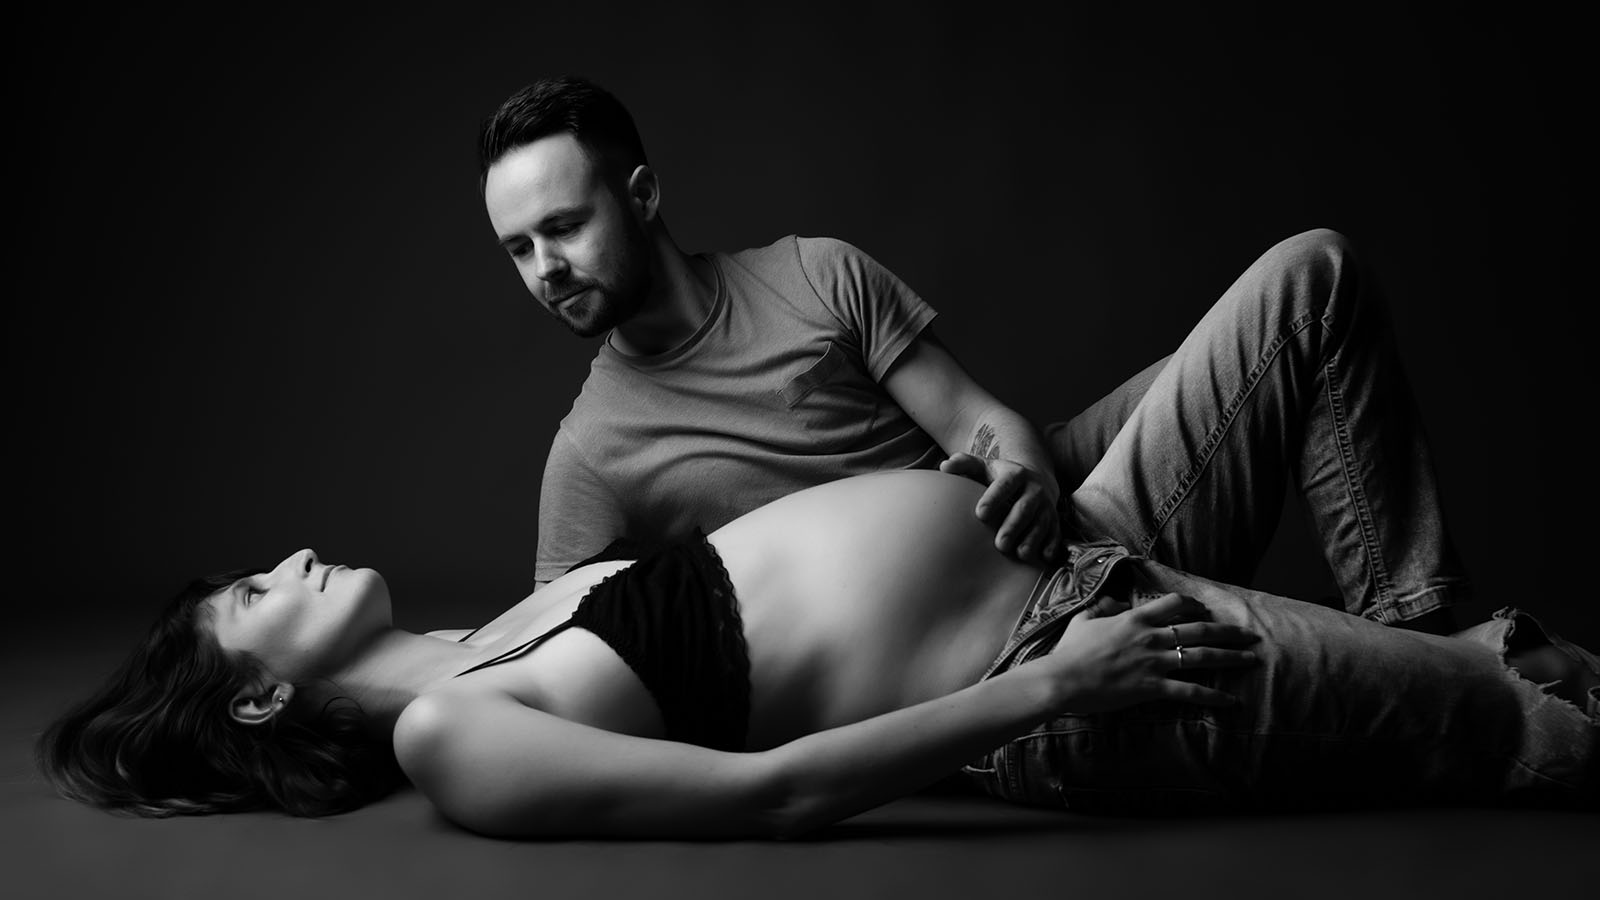 photo noir et blanc d'un couple. ils sont allongés au sol, la femme est enceinte et l'homme a une main posé sur son ventre et la regarde